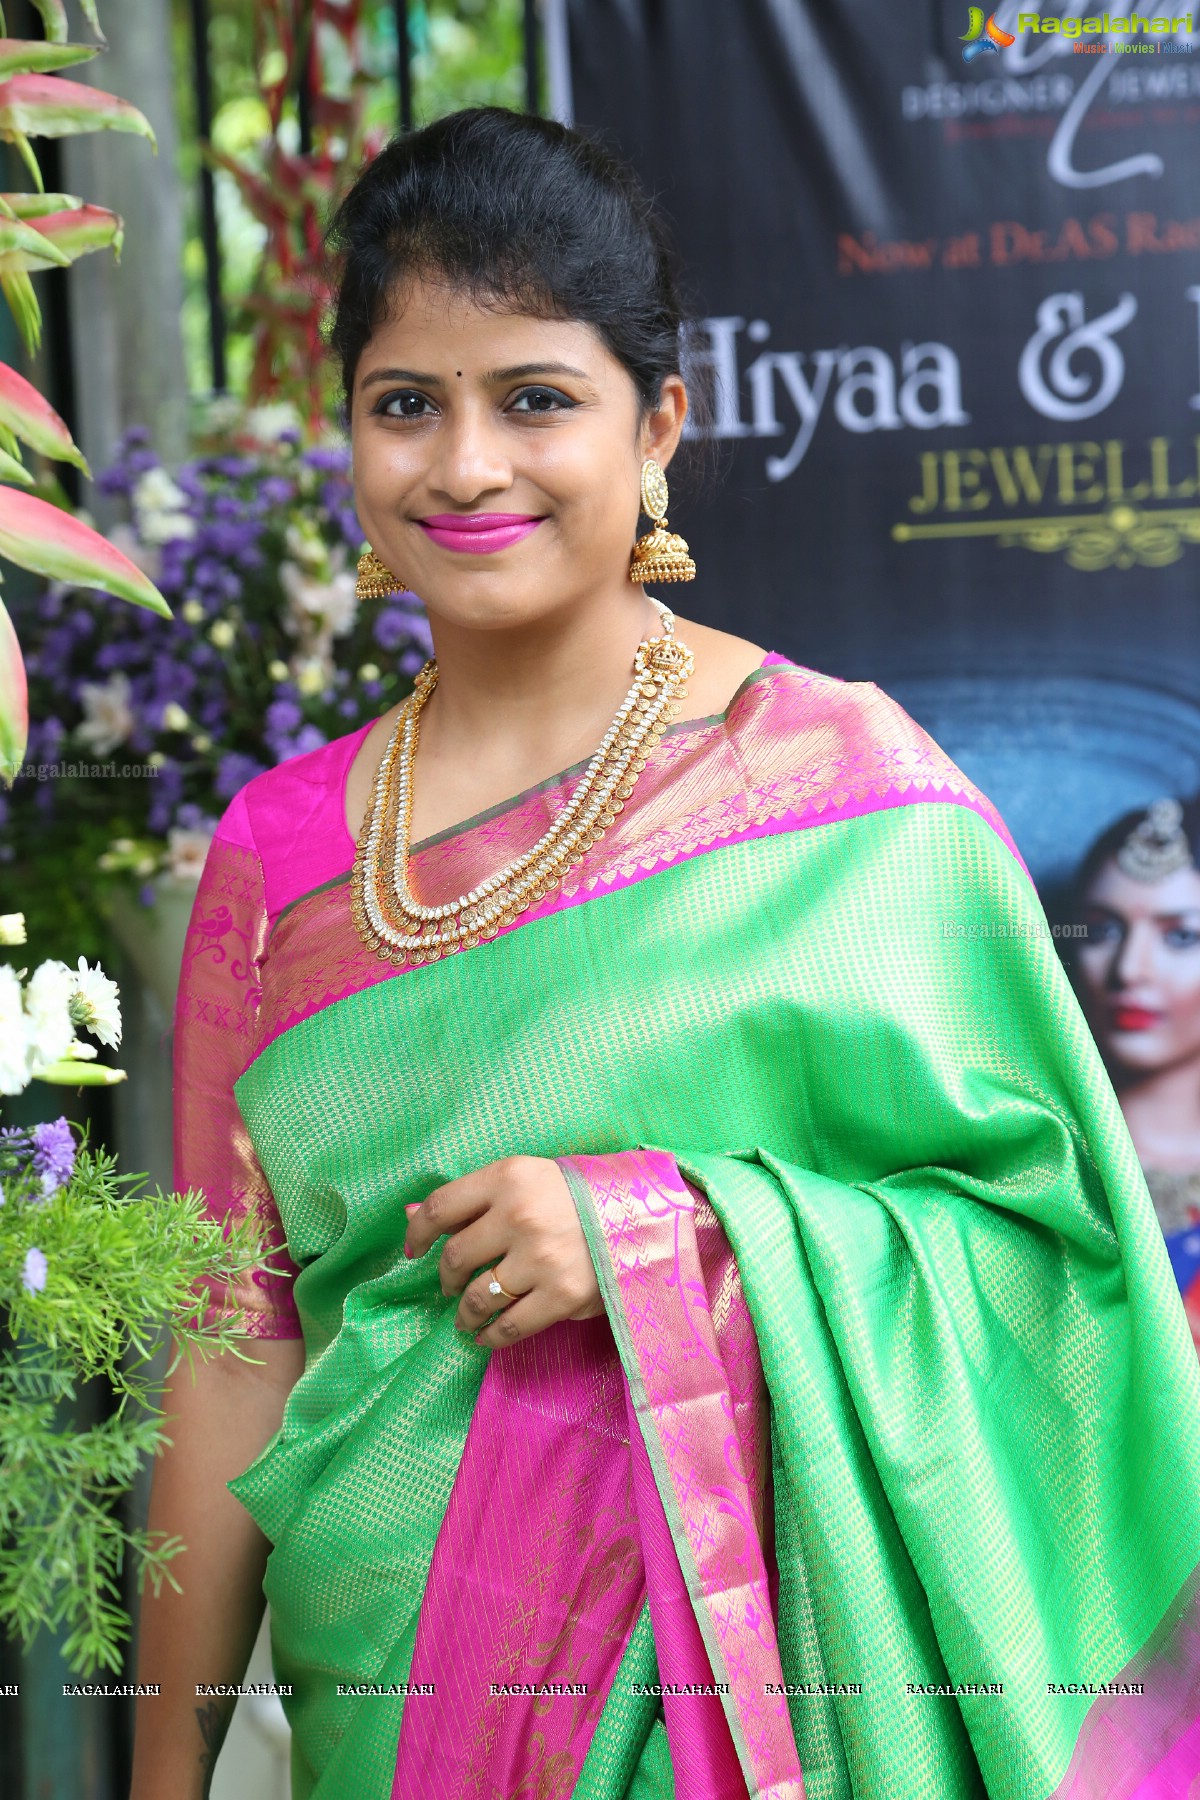 Regina Cassandra launches Hiyaa and Laasya Jewellers at AS Rao Nagar, Hyderabad